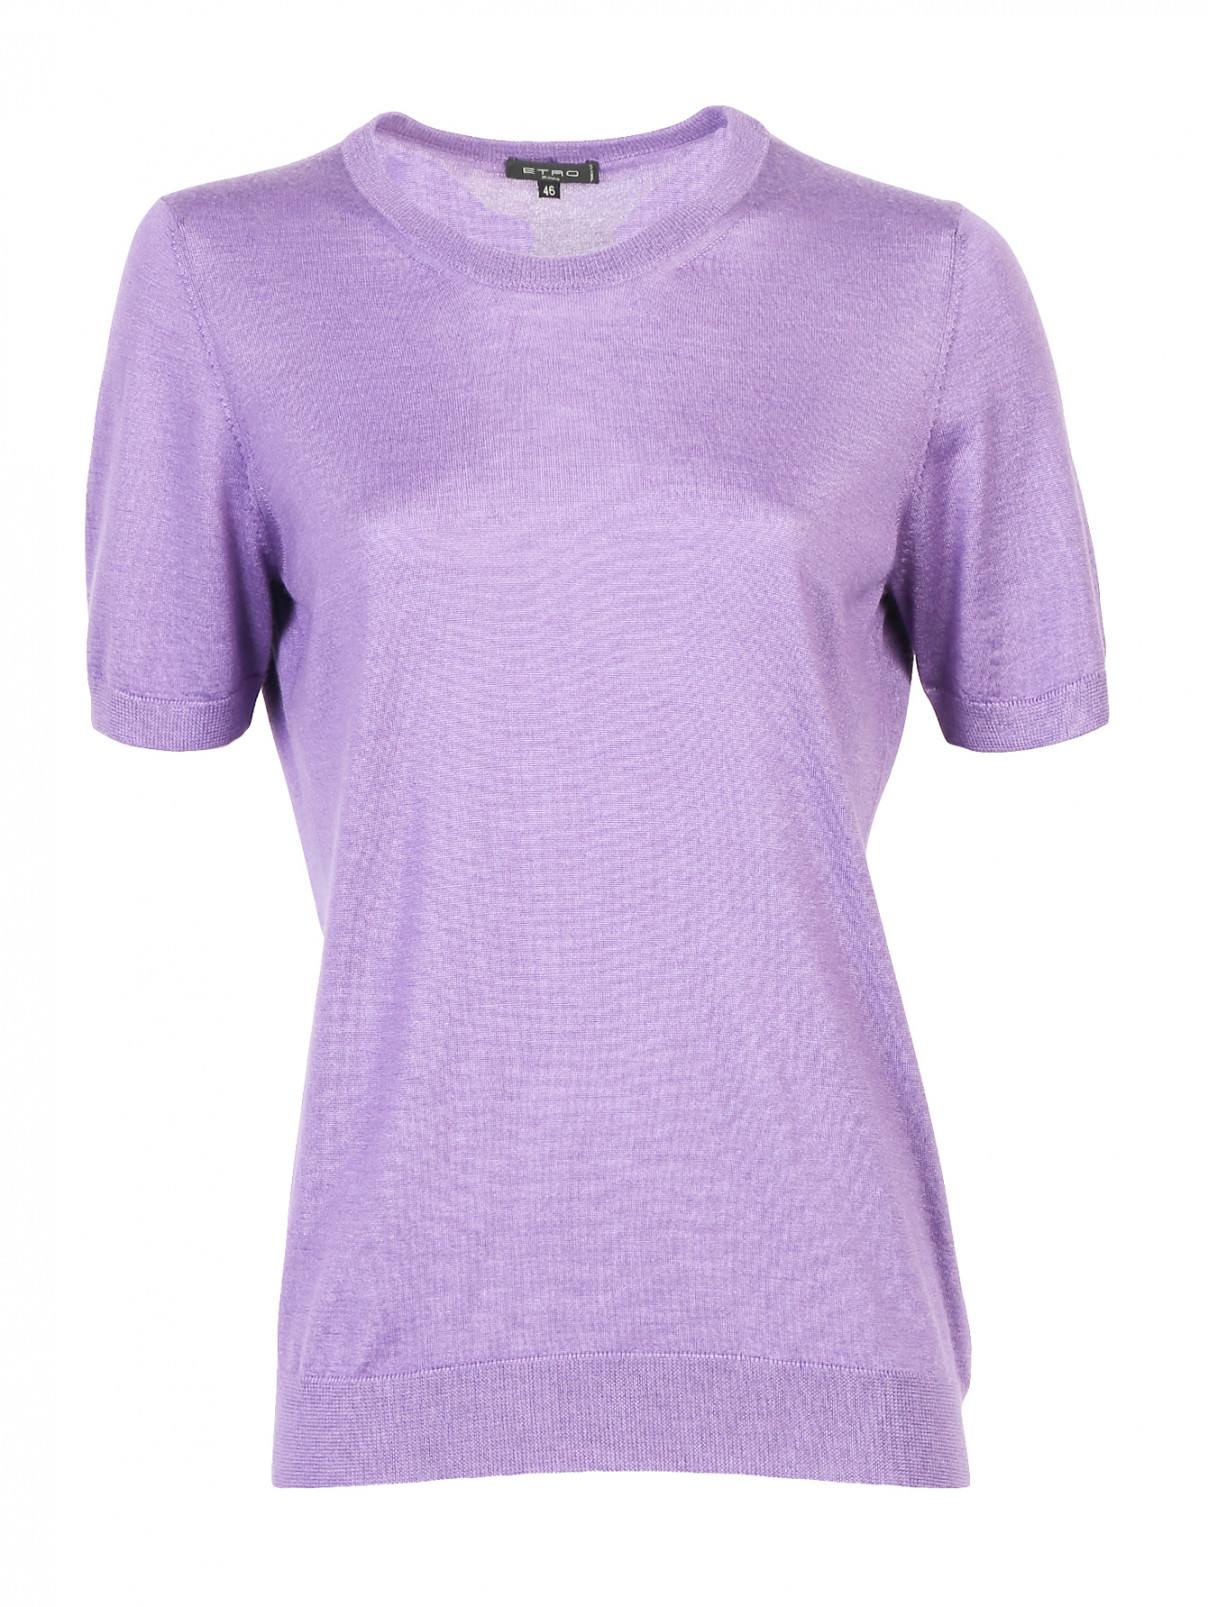 Джемпер из шерсти и кашемира с короткими рукавами Etro  –  Общий вид  – Цвет:  Фиолетовый